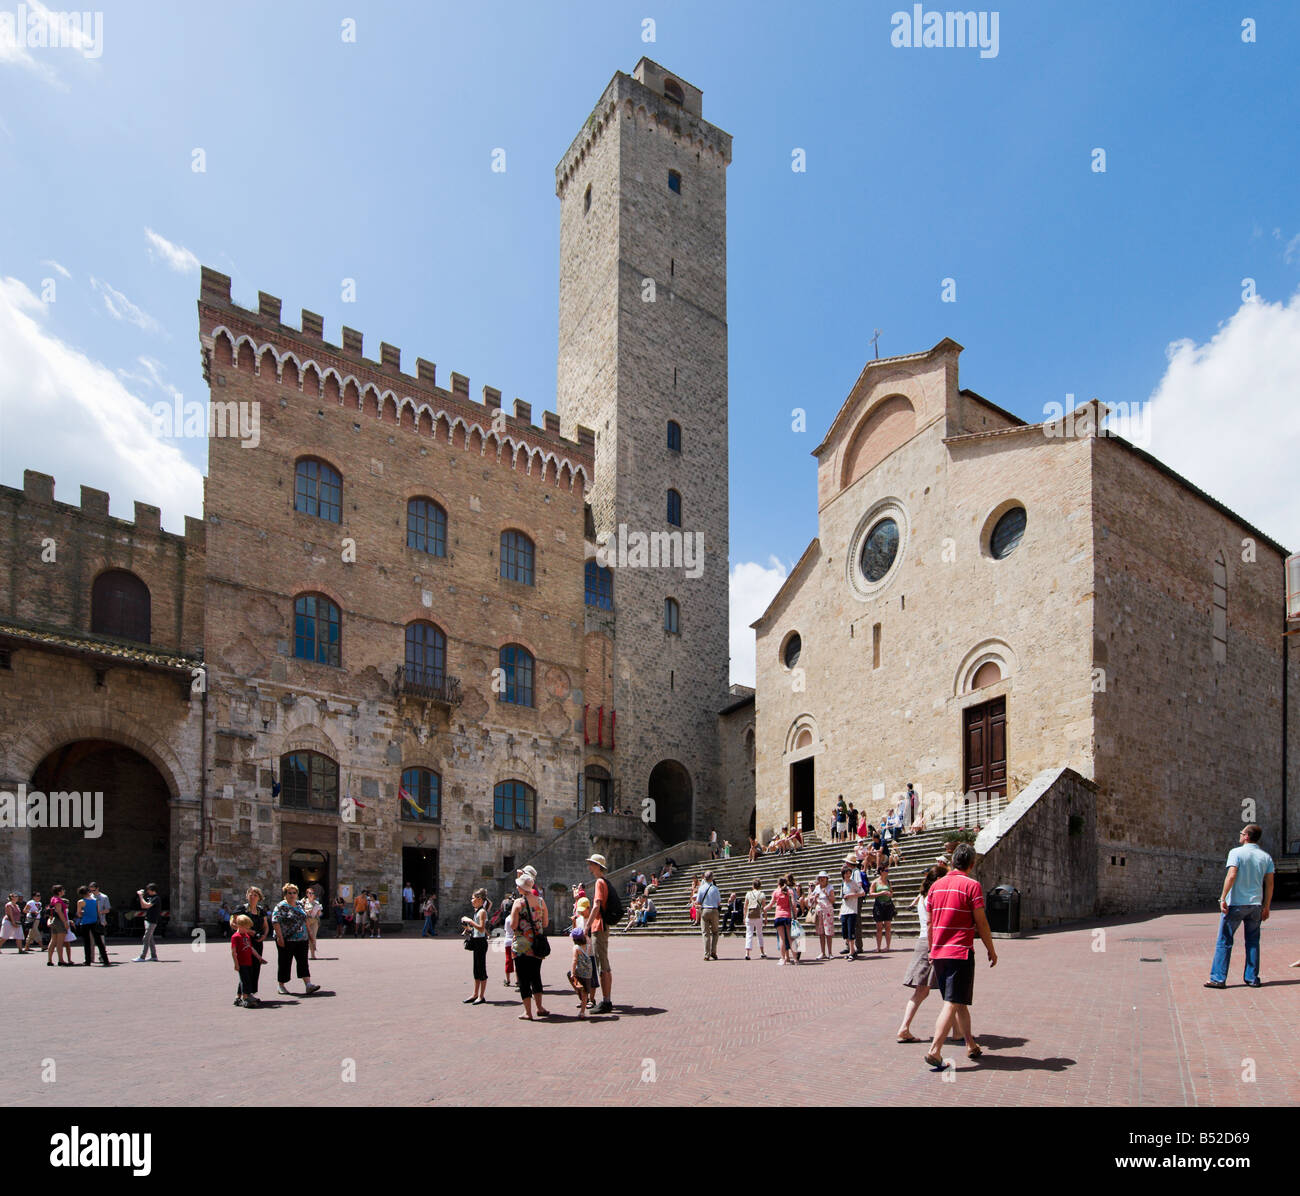 La Collegiata (Duomo) e Torre Grossa in Piazza del Duomo, San Gimignano, Toscana, Italia Foto Stock